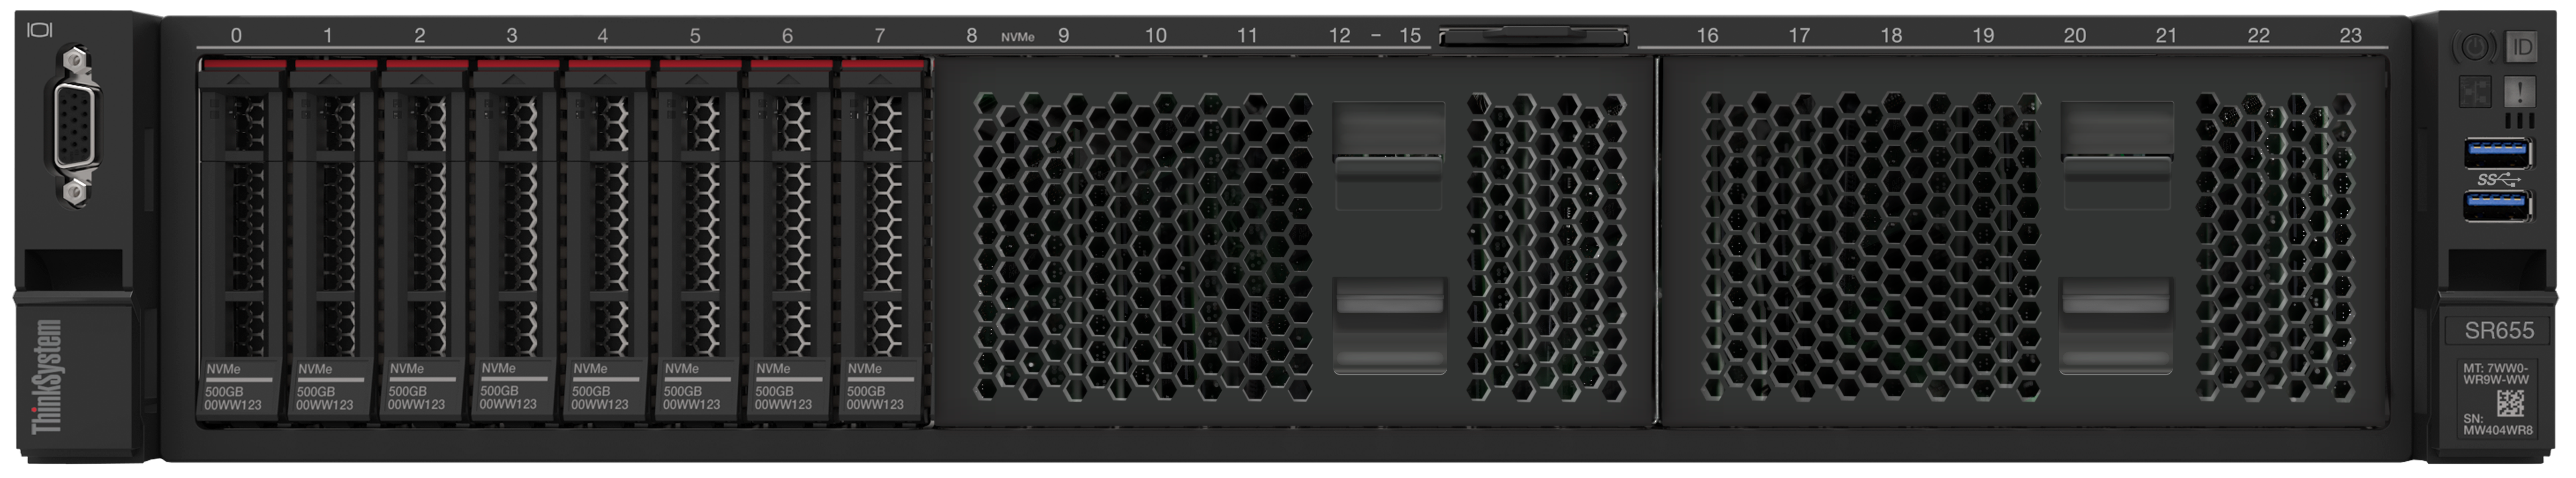 Lenovo Server SR655 mit NVMe Speicher